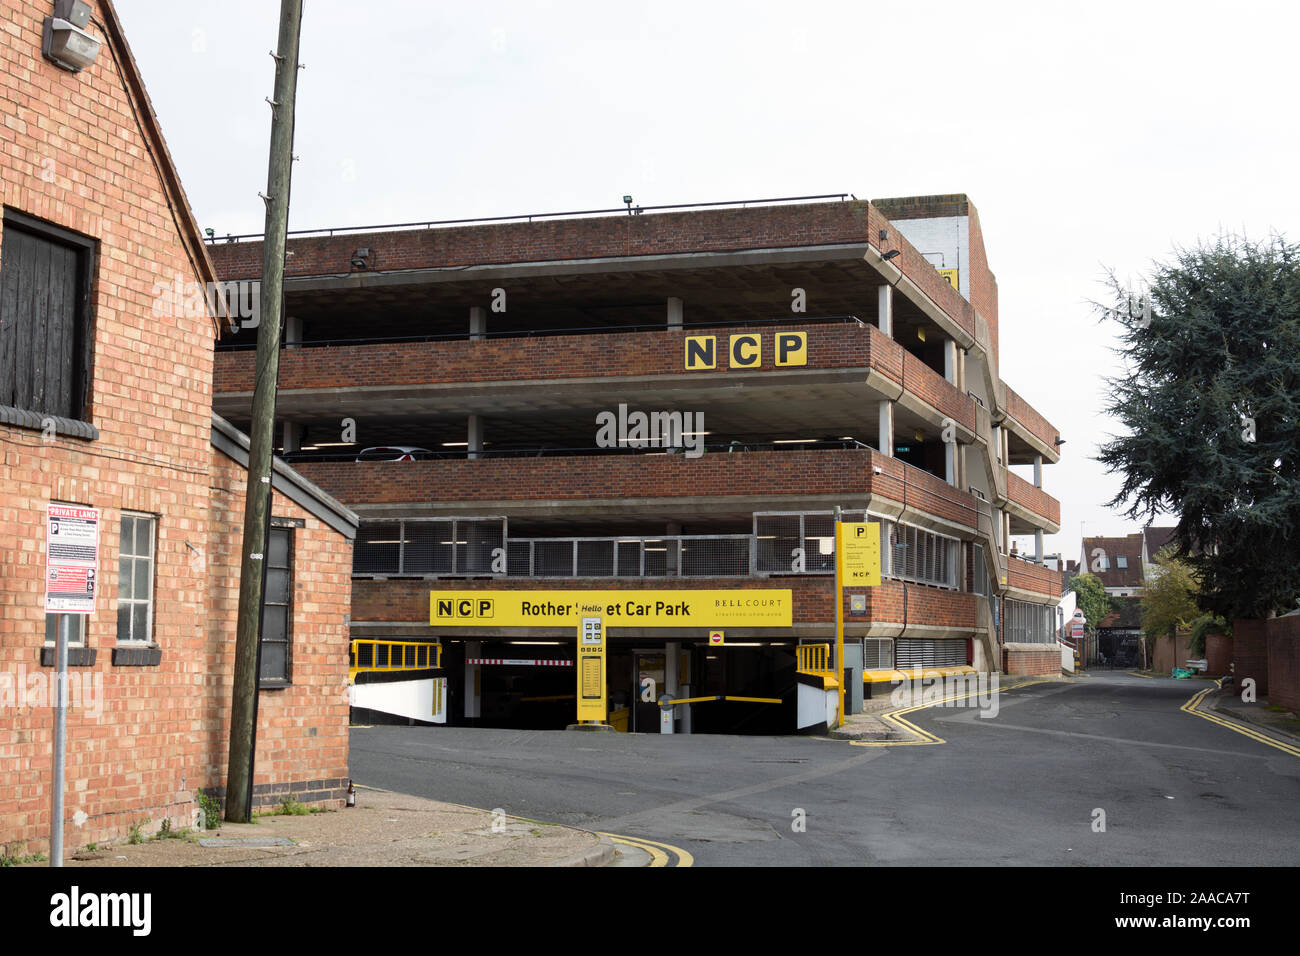 Rother Street NCP parking à étages, Stratford-upon-Avon, Warwickshire, UK Banque D'Images